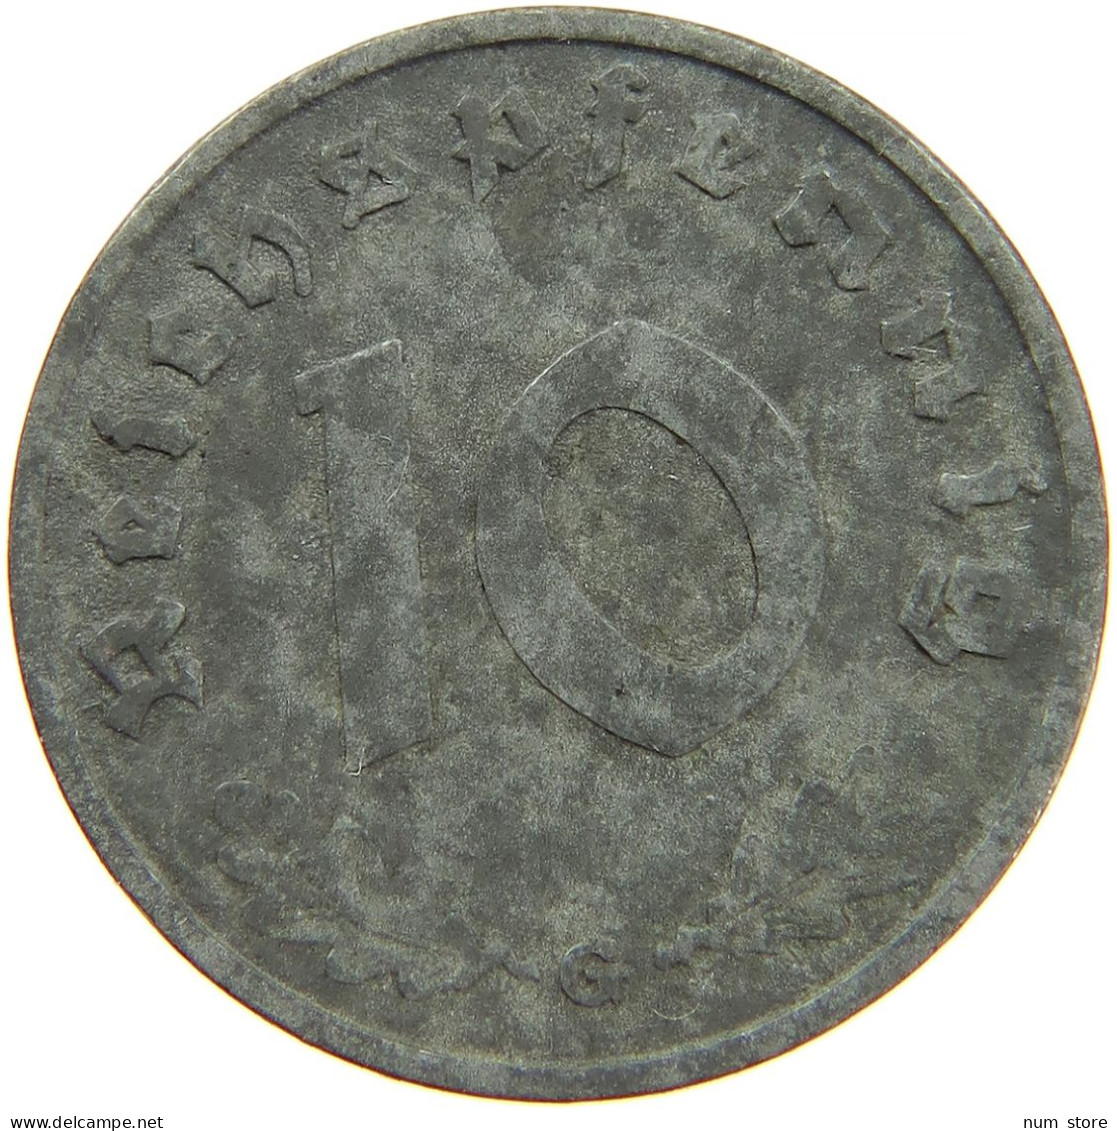 GERMANY 10 REICHSPFENNIG 1941 G #s088 0115 - 10 Reichspfennig